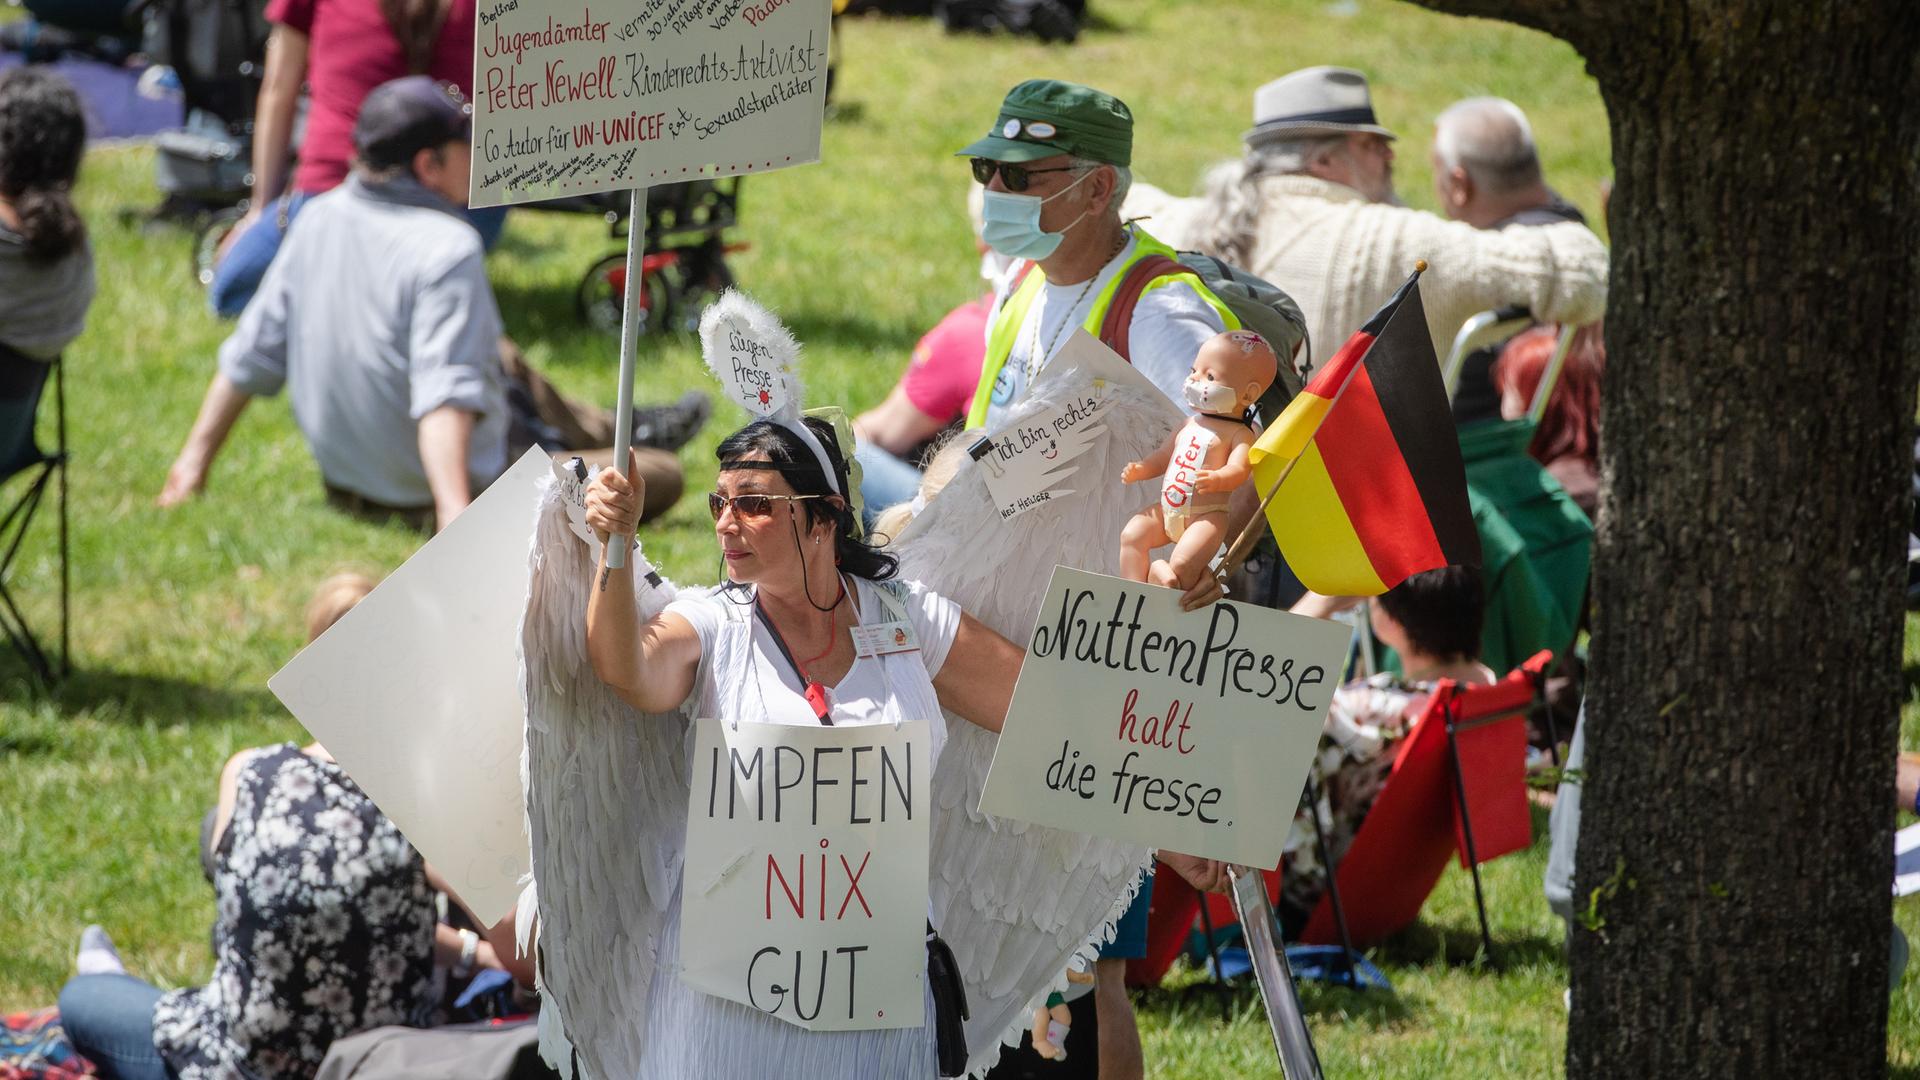 Eine Frau hält auf einer "Querdenker"-Demonstration Schilder, auf denen " Impfen nix gut" und "NuttenPresse halt die Fresse" steht.